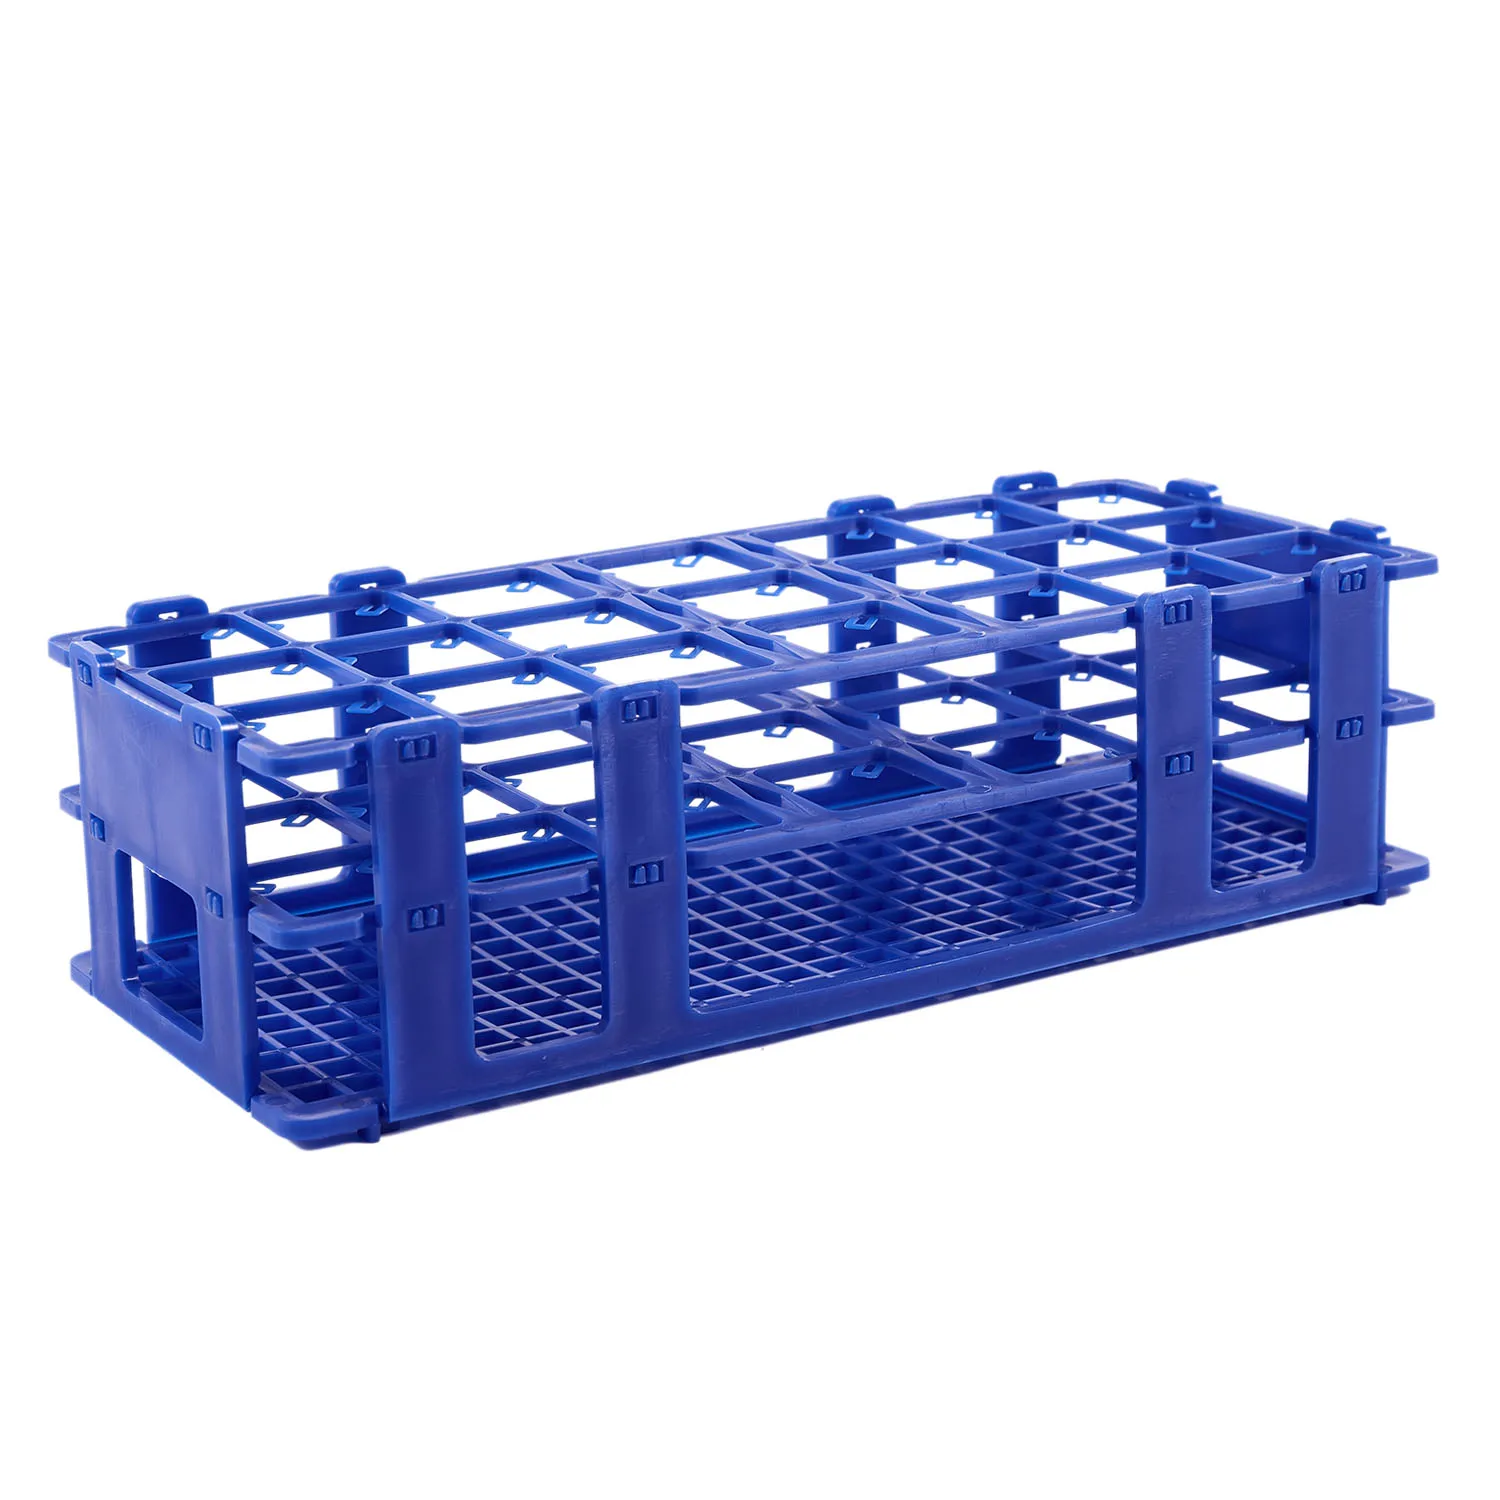 Синяя пластиковая коробка с 21 отверстием для центрифужных пробирок объемом 50 МЛ